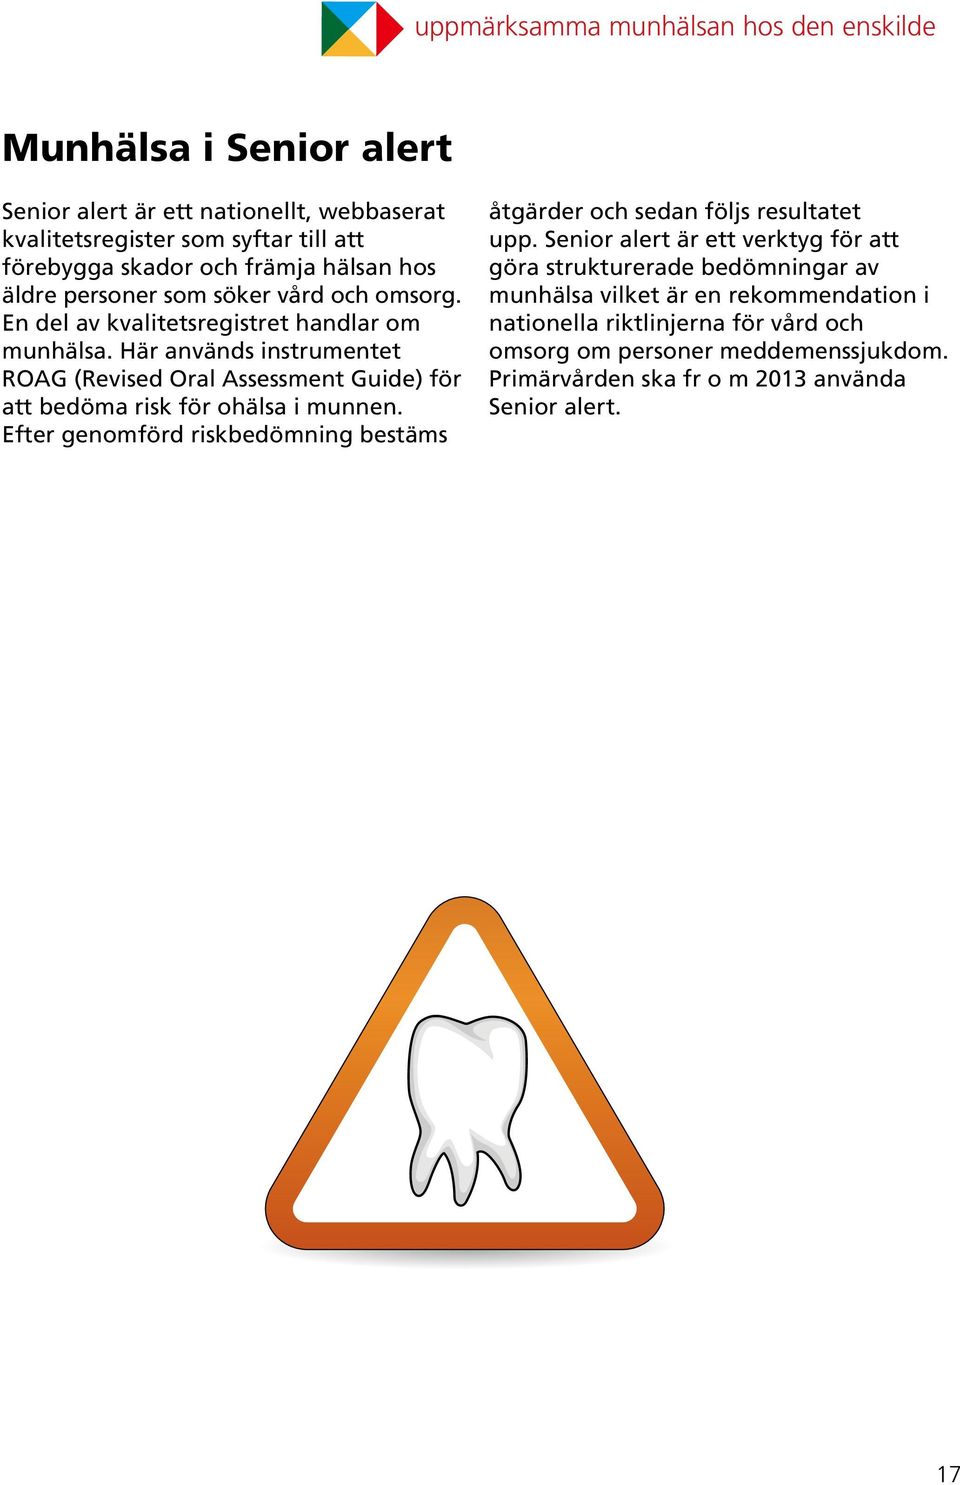 Här används instrumentet ROAG (Revised Oral Assessment Guide) för att bedöma risk för ohälsa i munnen.